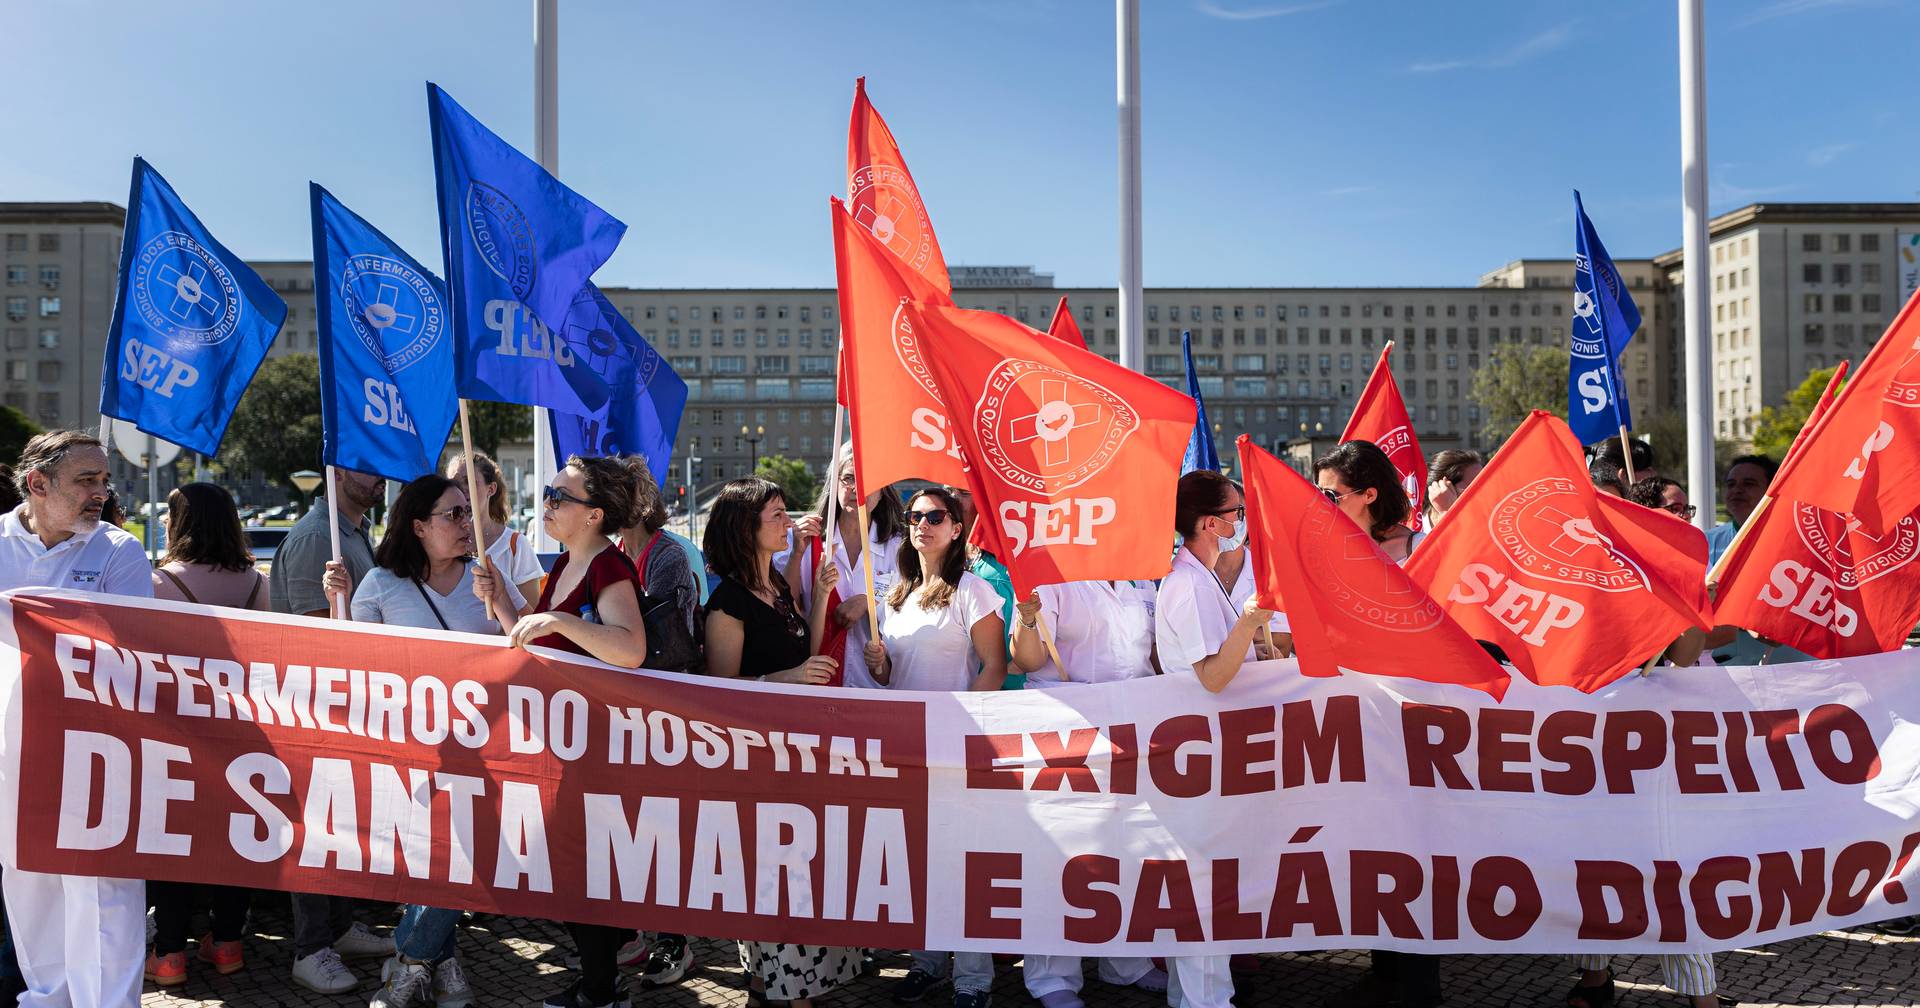 Huelgas sanitarias: la escasez de trabajadores sanitarios y los salarios precarios preocupan al sector